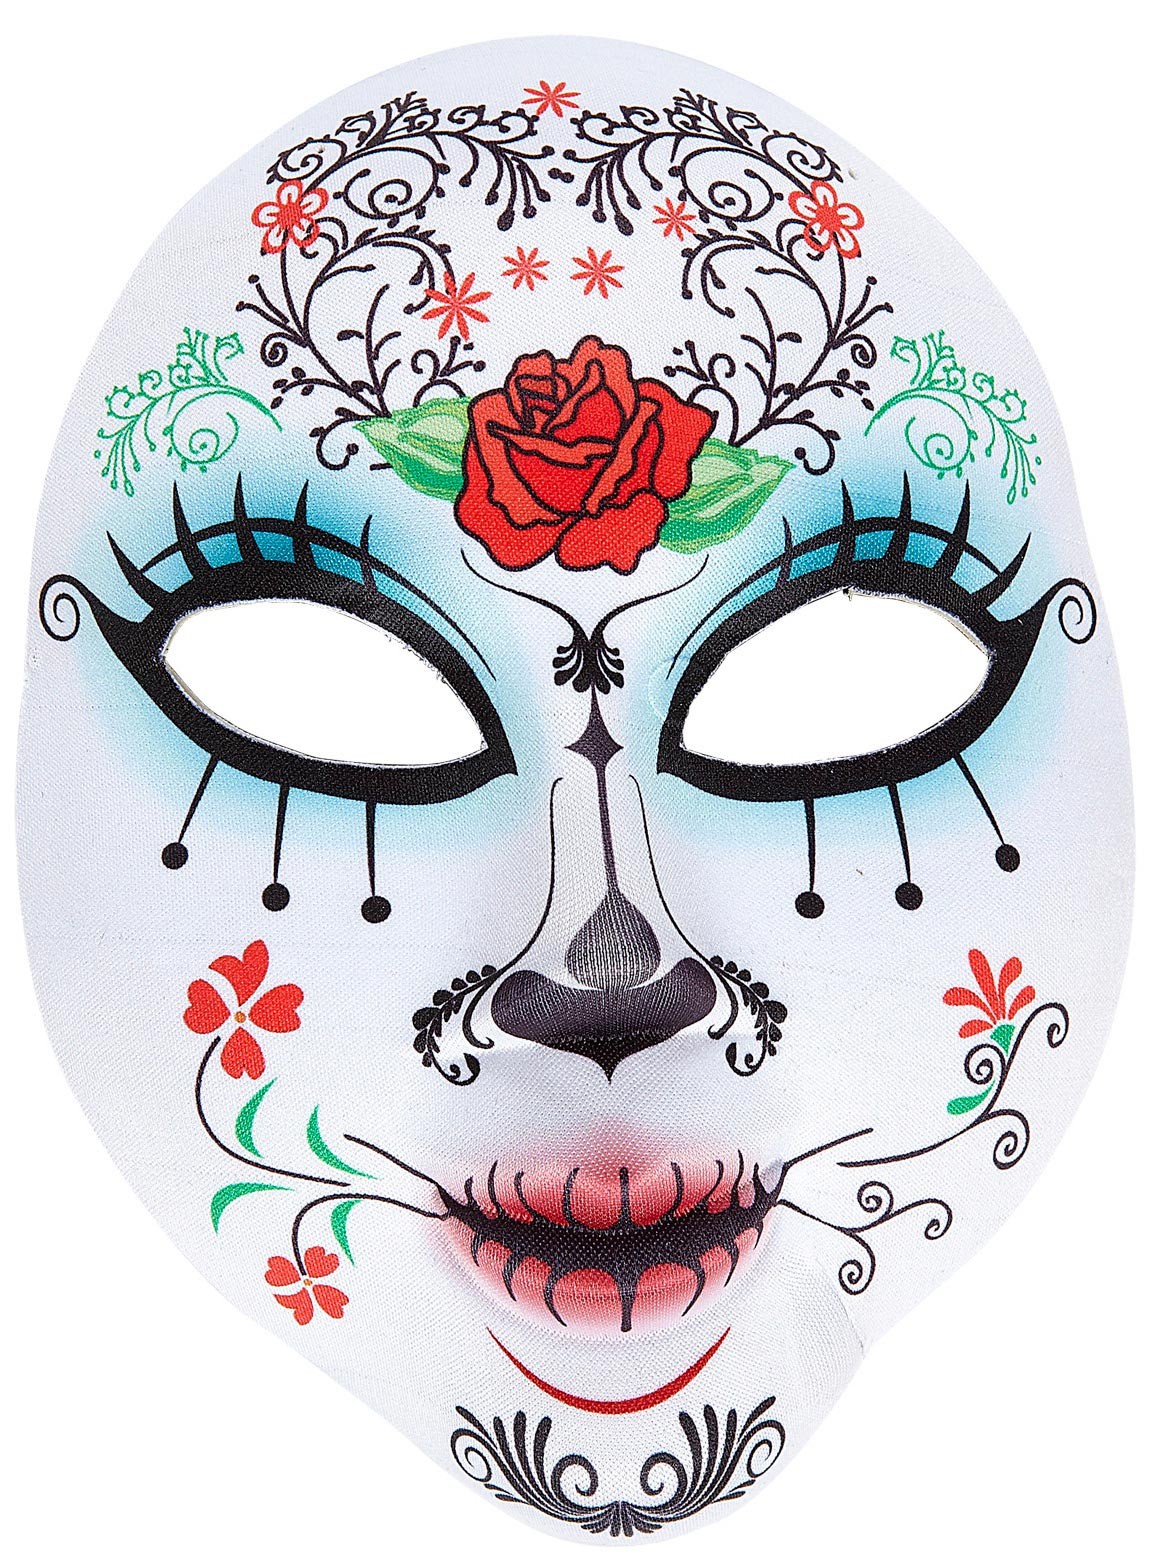 Маски на дне рождении. Маска los muertos. Маска dias de los muertos. Мексиканские карнавальные маски для лица. Маска на день мёртвых.